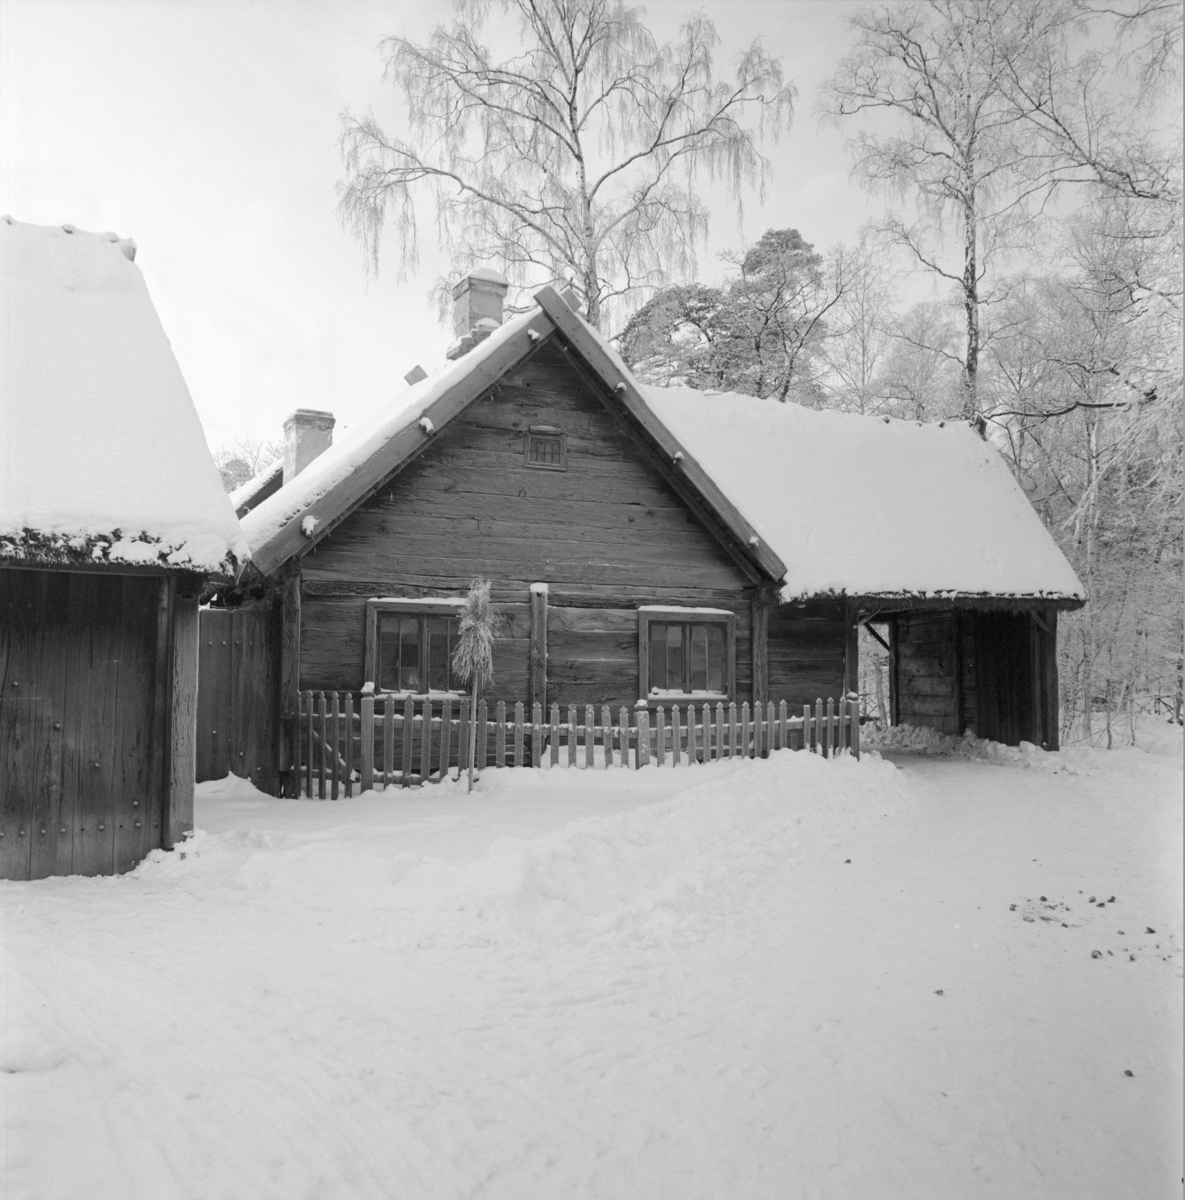 Vinterbilder på gårdar, ute och inne. Skansen.